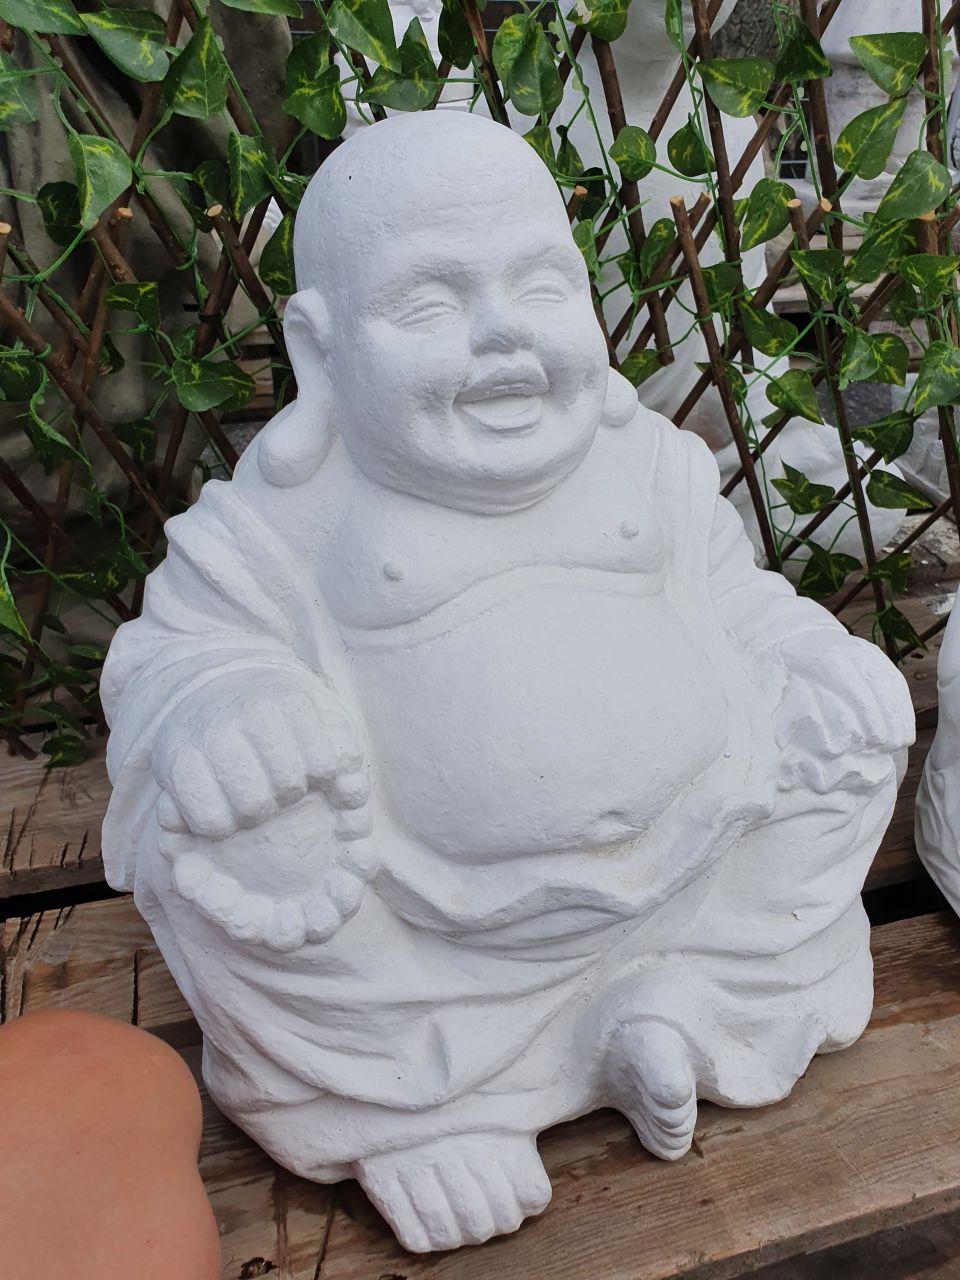 -Gartenfigur Buddha -Hoeti- medium- verschiedene Farben- unter Statuen/Skulpturen Edition Elegance